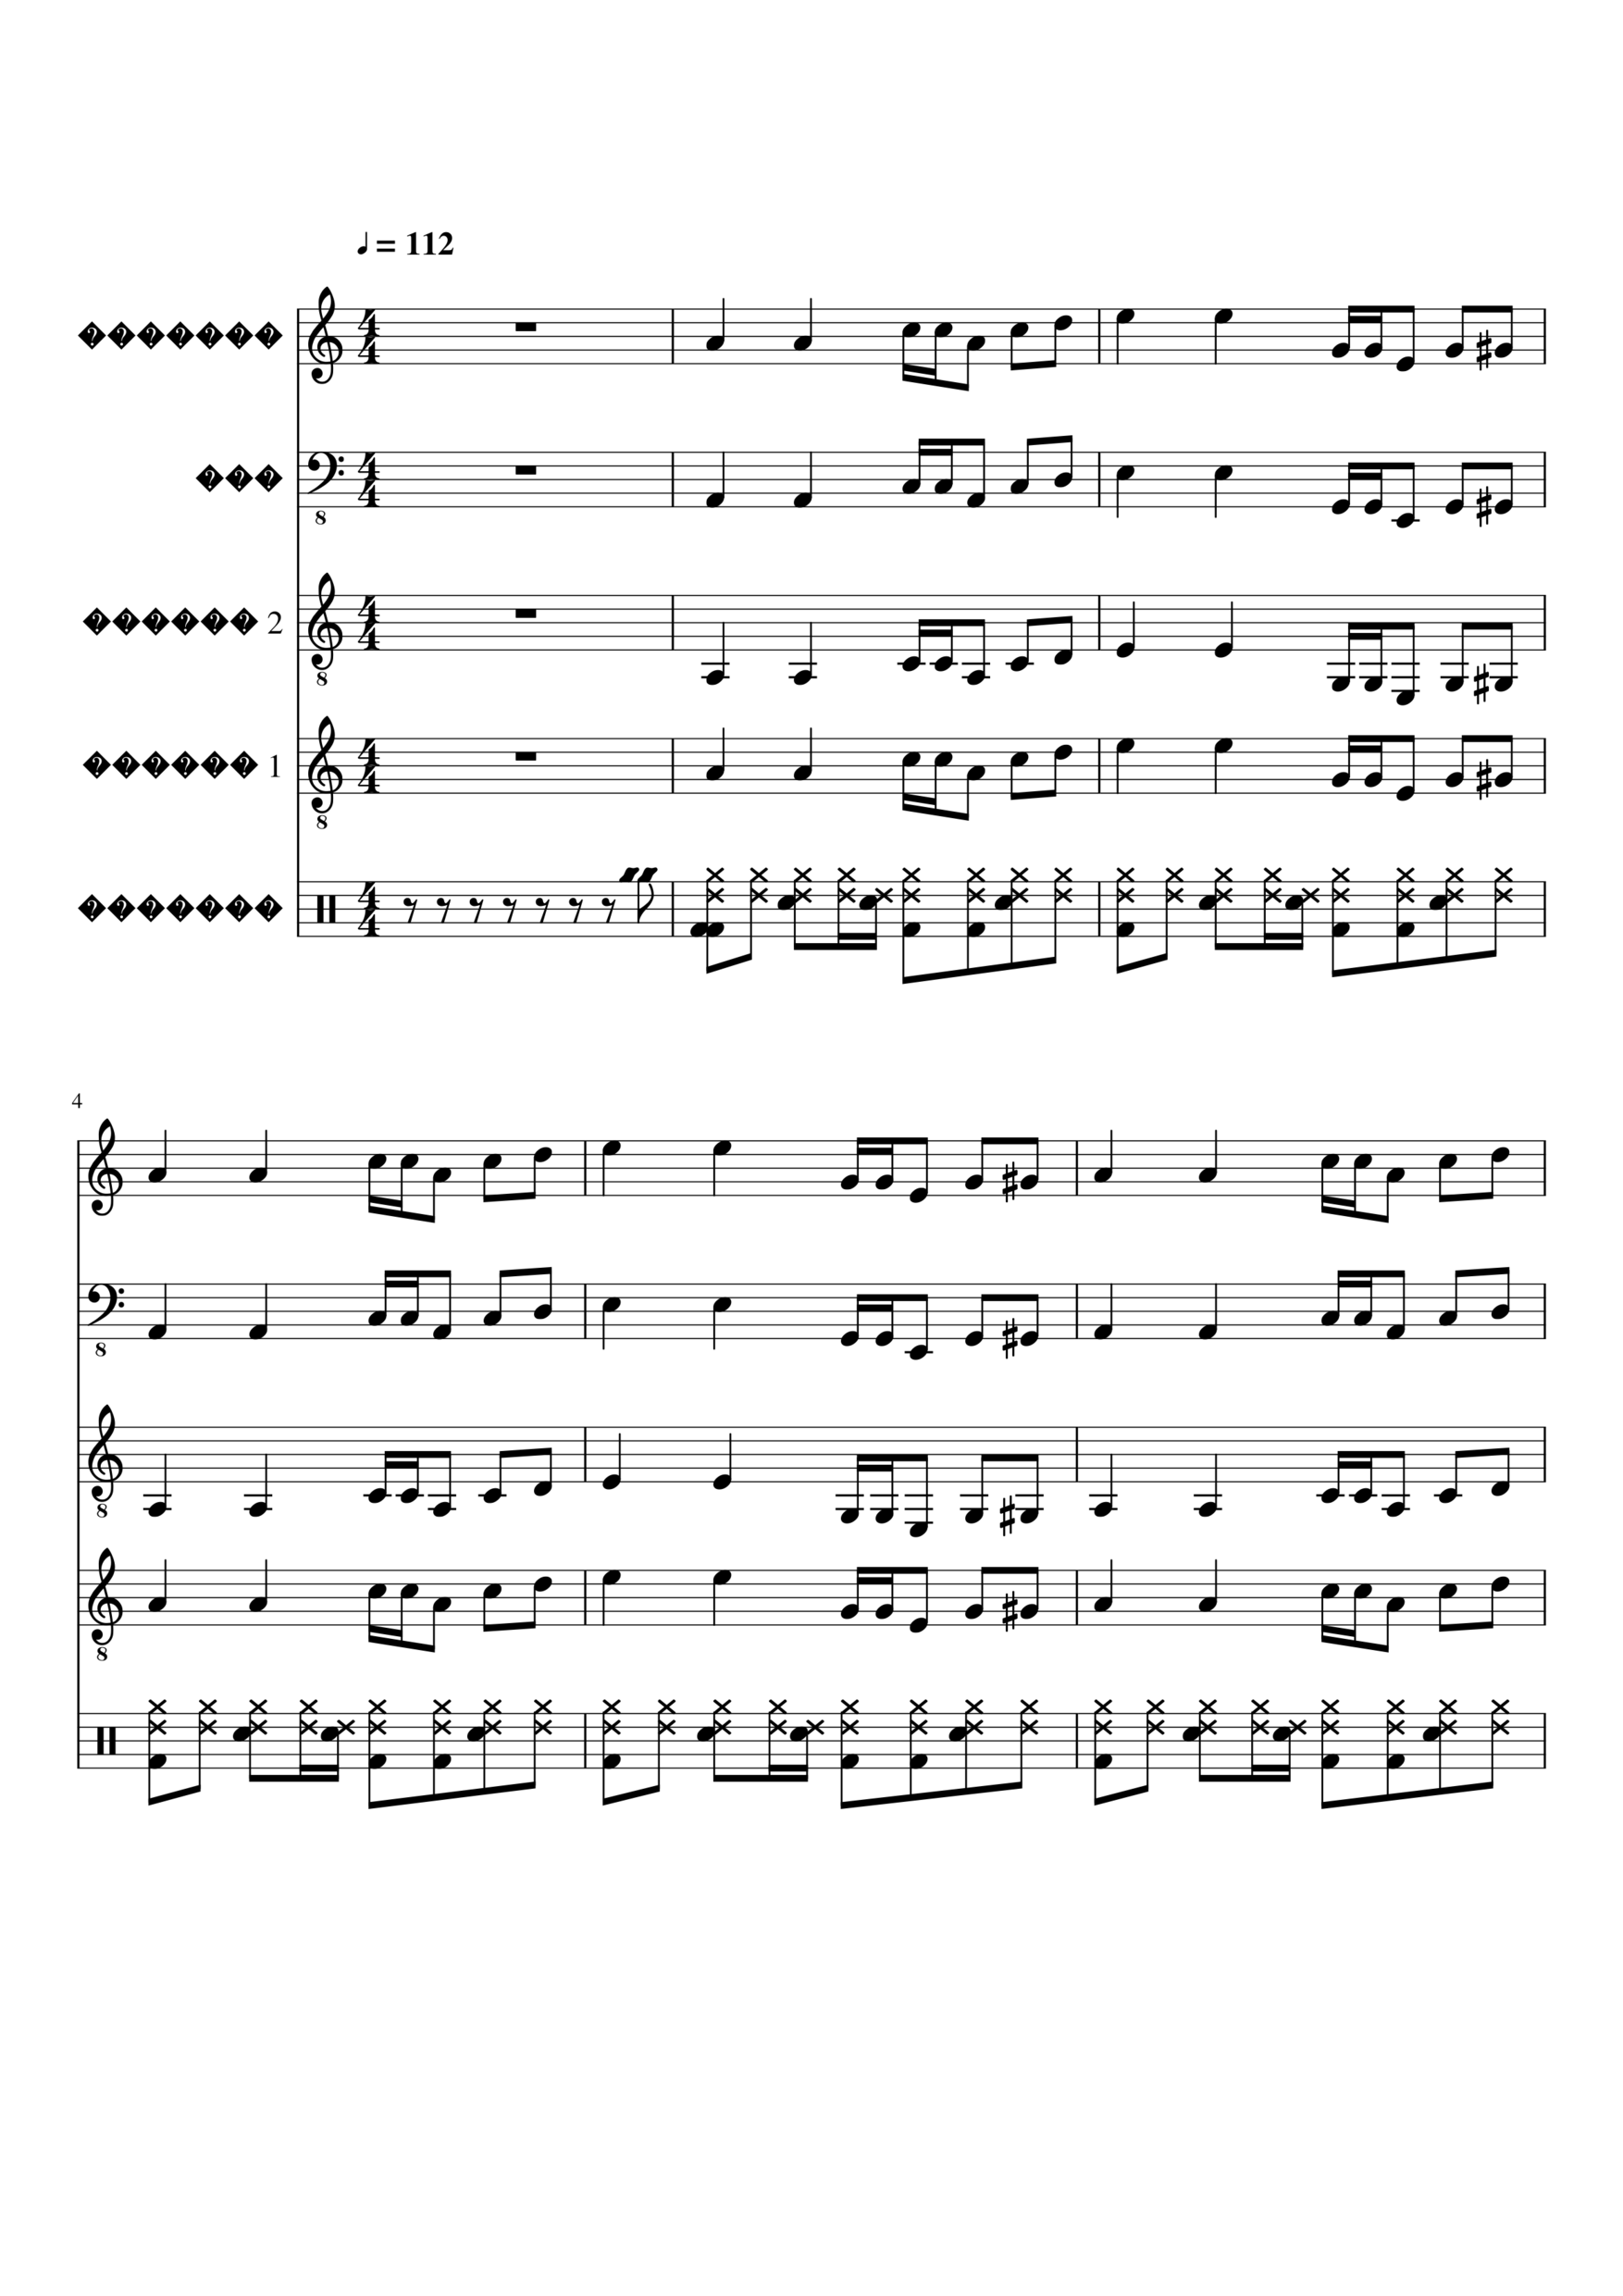 Vechnaya lyubov slide, Image 1